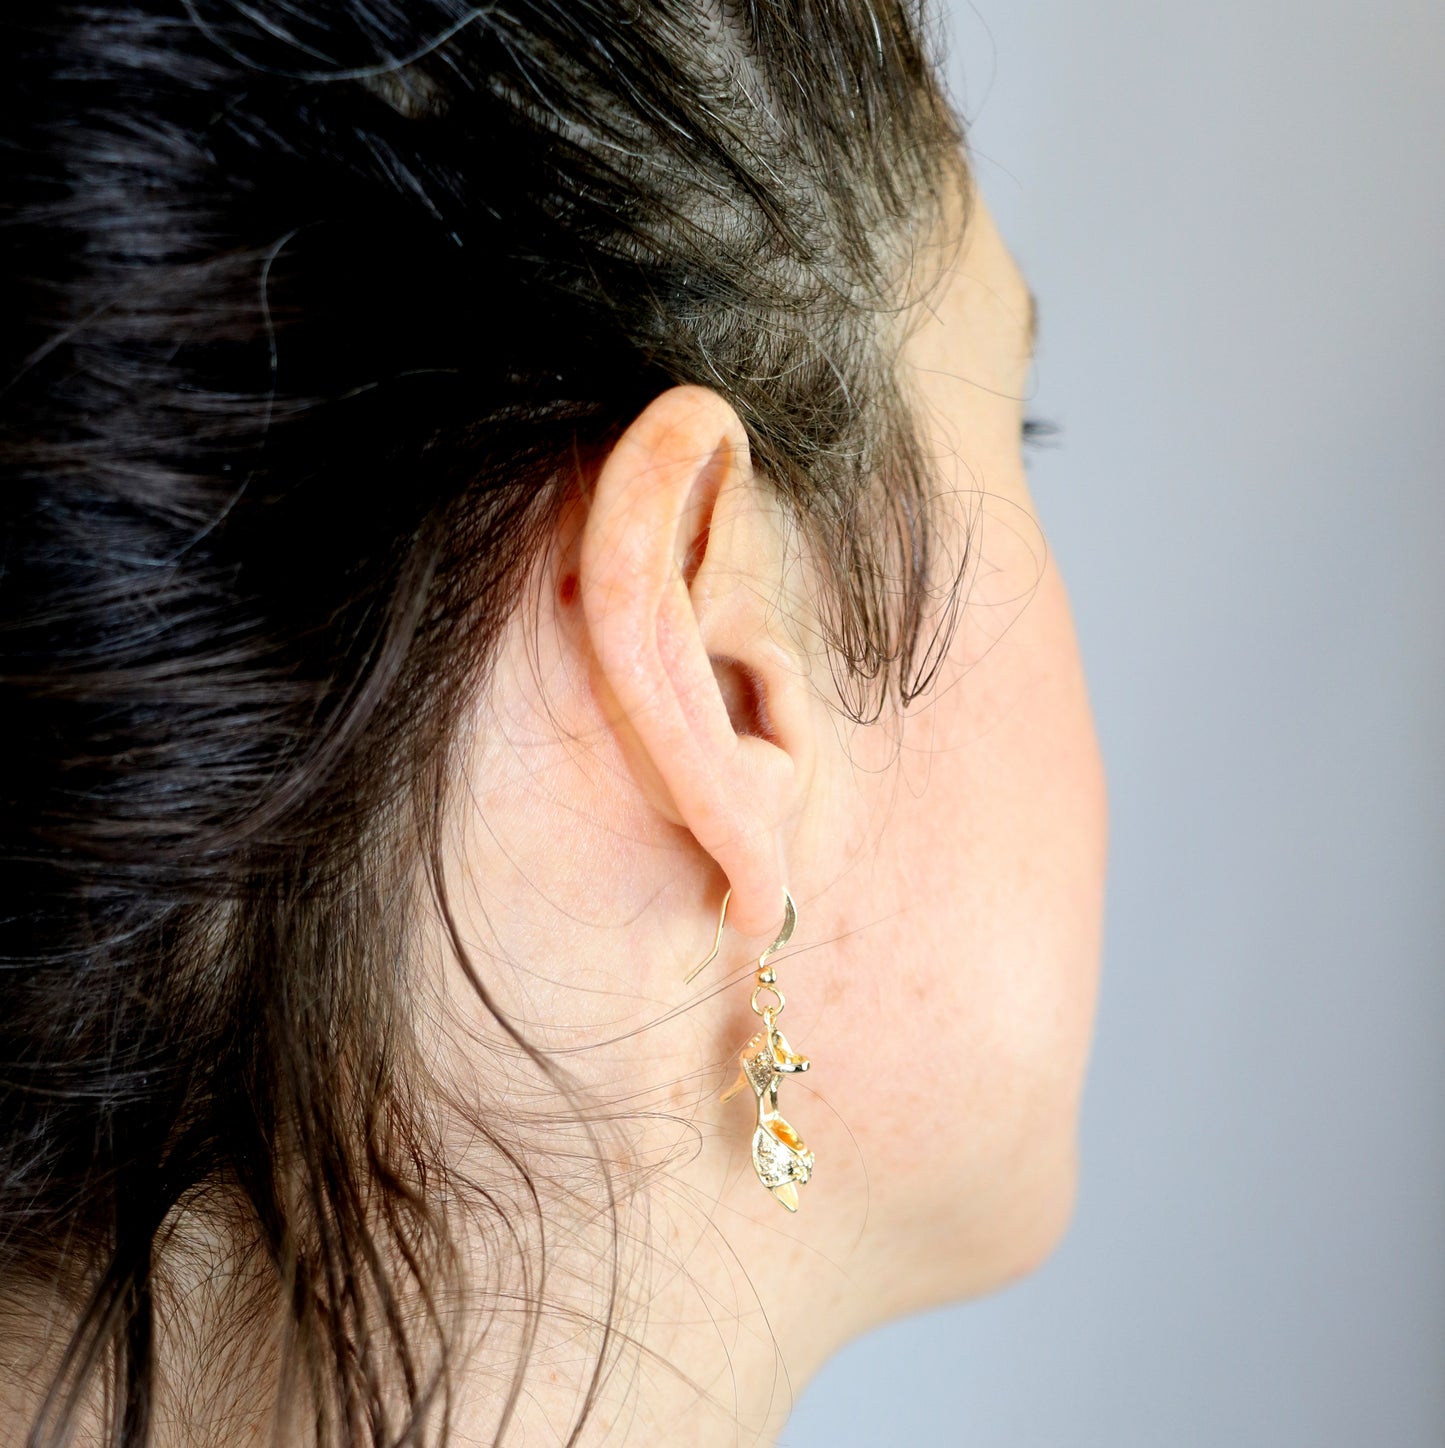 Heeled shoe earrings - gold